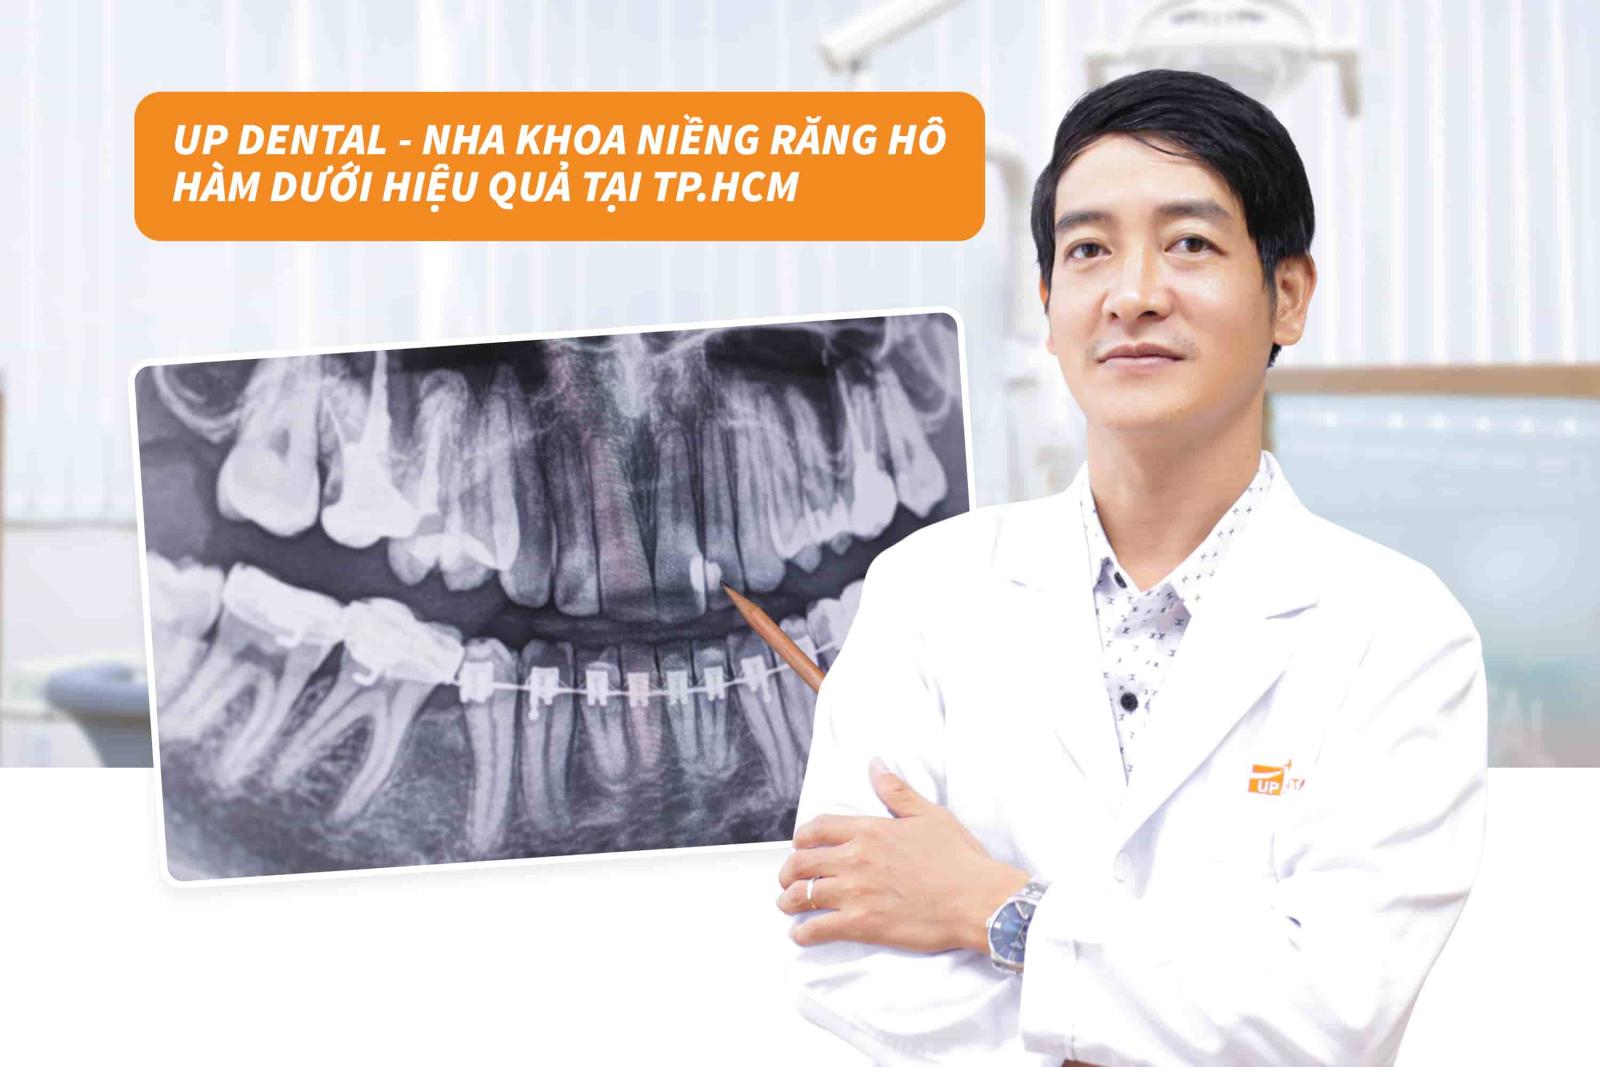 Up Dental - Nha khoa niềng răng hô hàm dưới hiệu quả tại TP.HCM